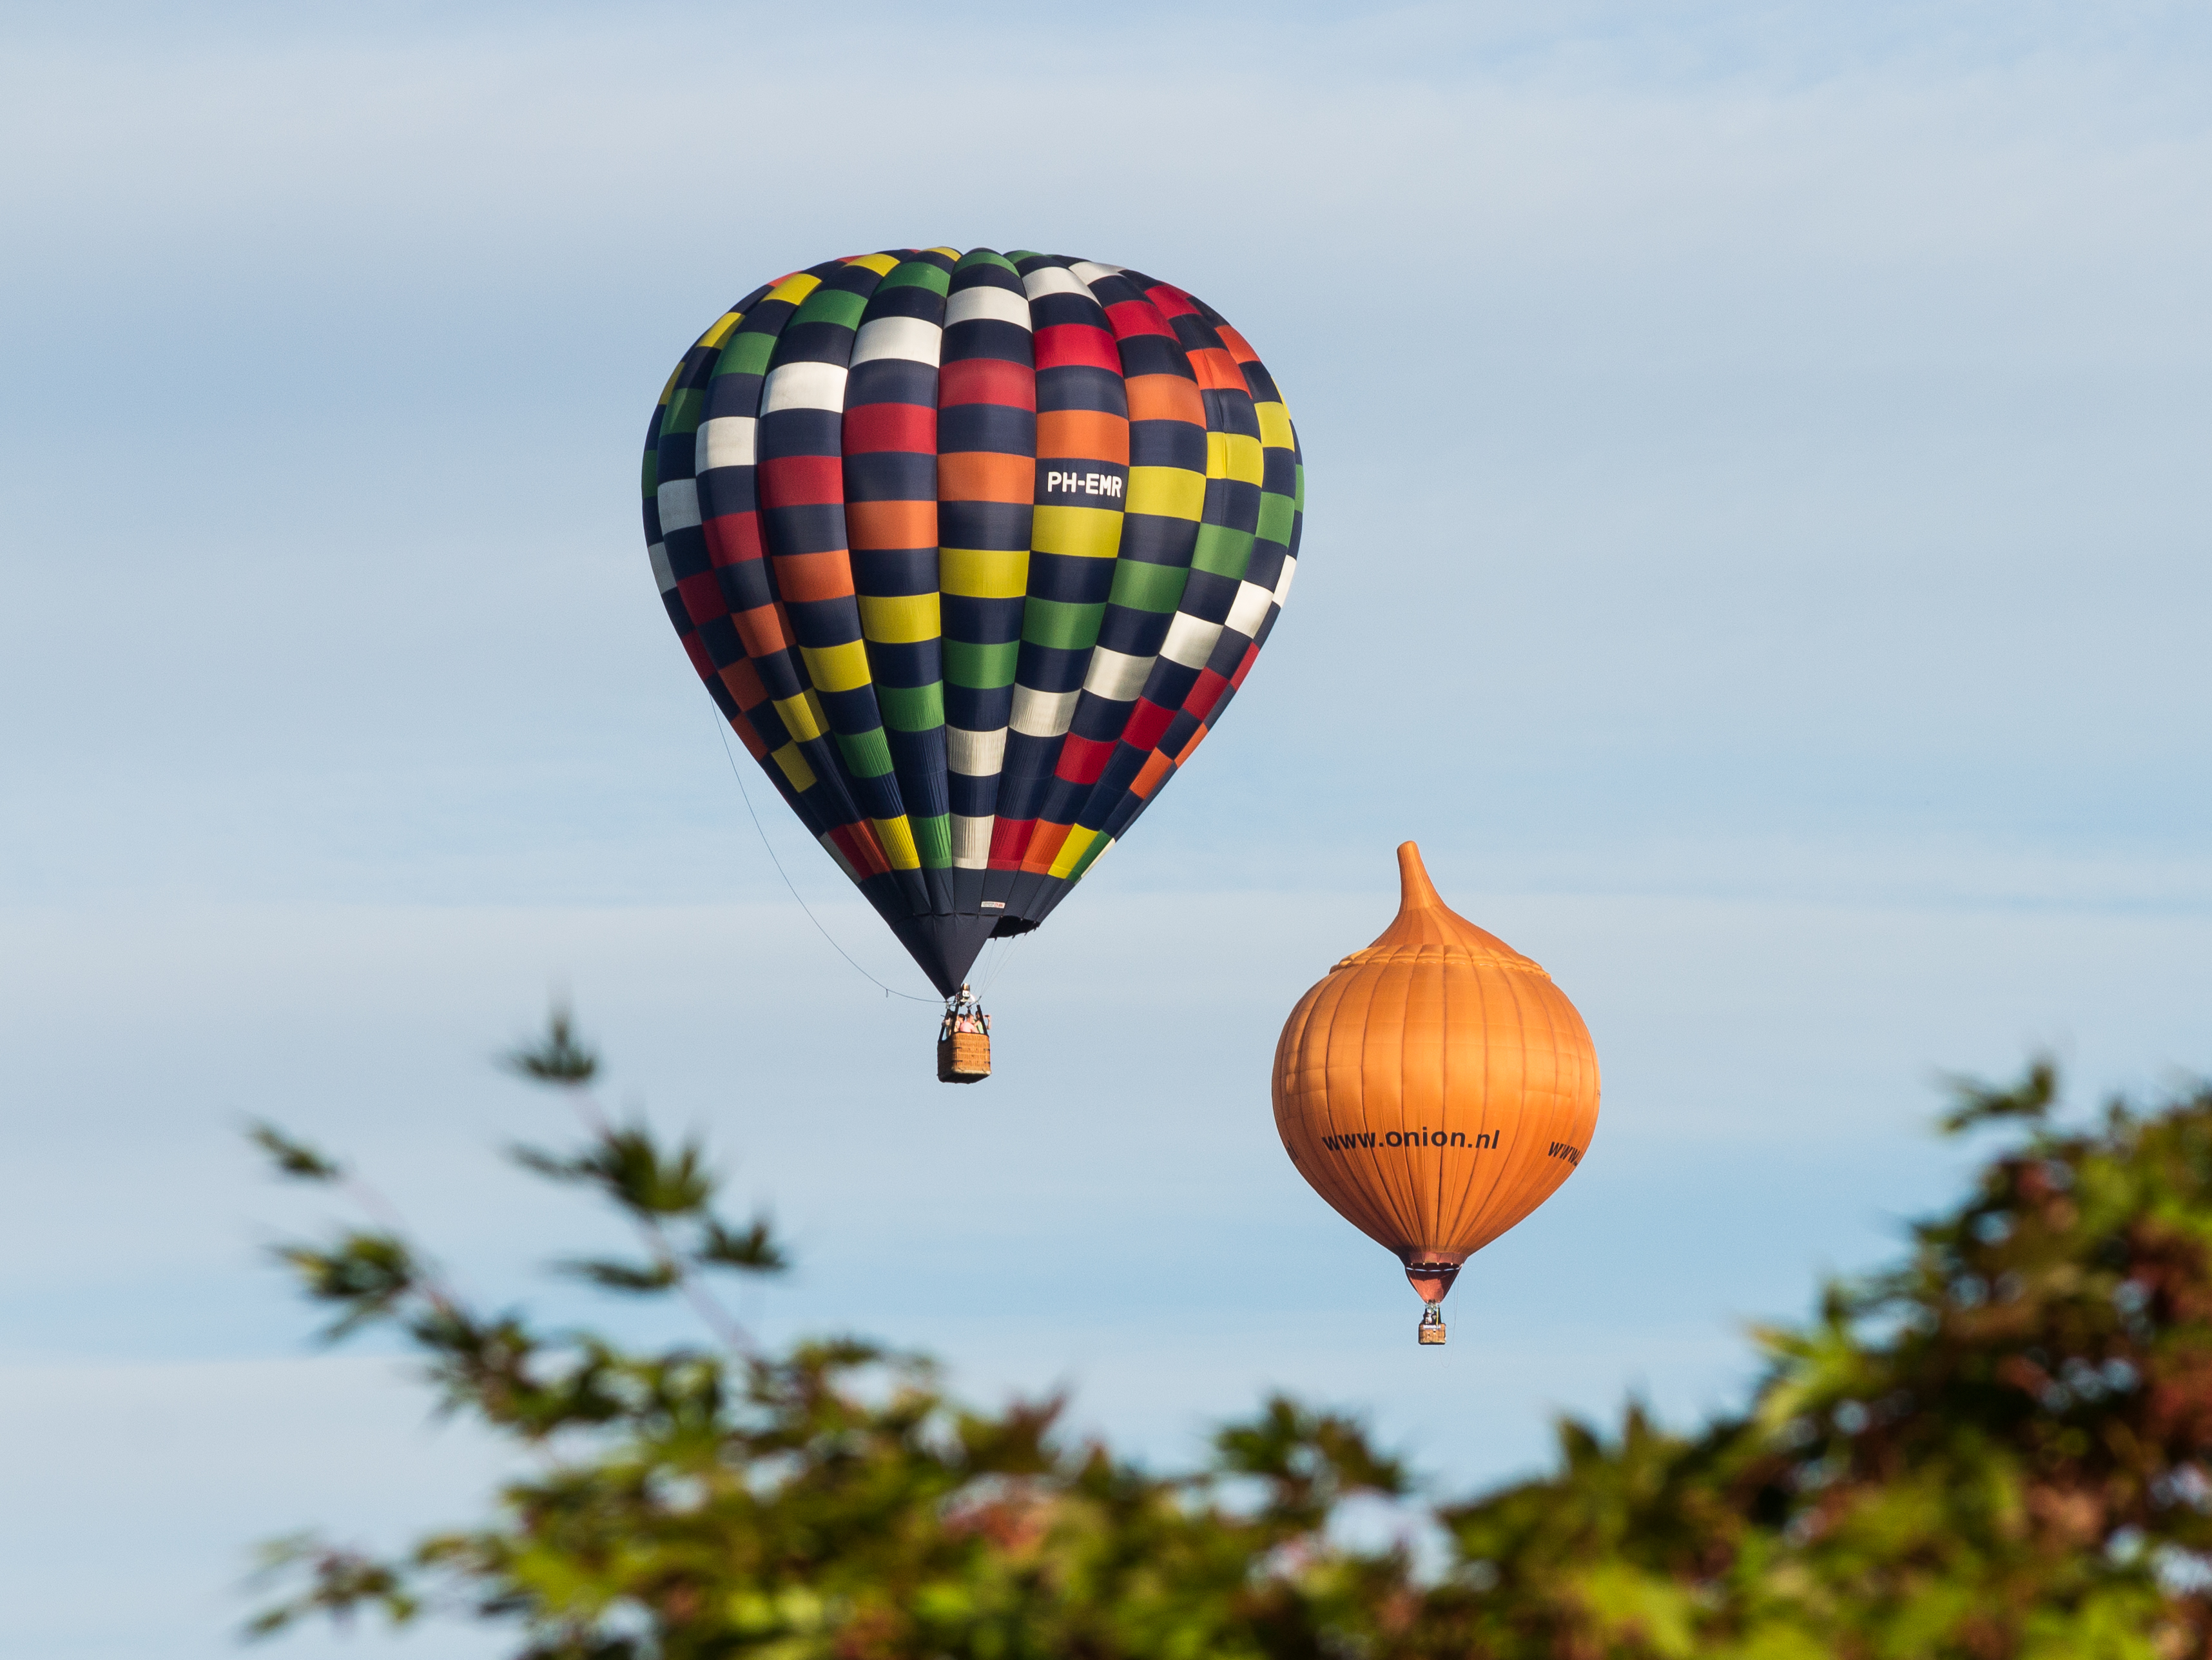 Meerdere ballonnen gelijktijdig in de lucht tijdens de Jaarlijkse Friese ballonfeesten in Joure 05